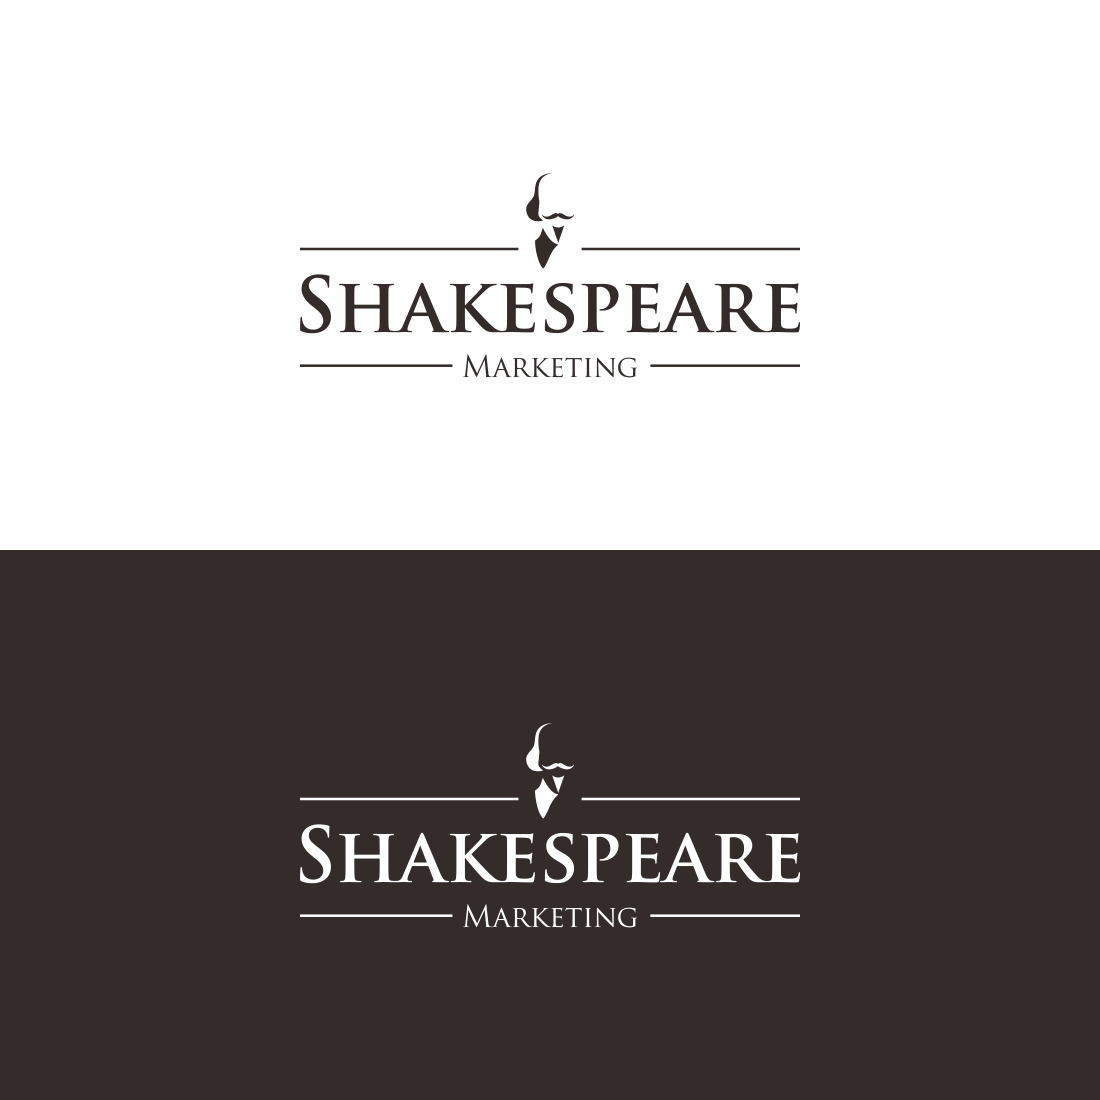 Shakespeare Logo - Bold, Modern, Marketing Logo Design for Shakespeare Marketing